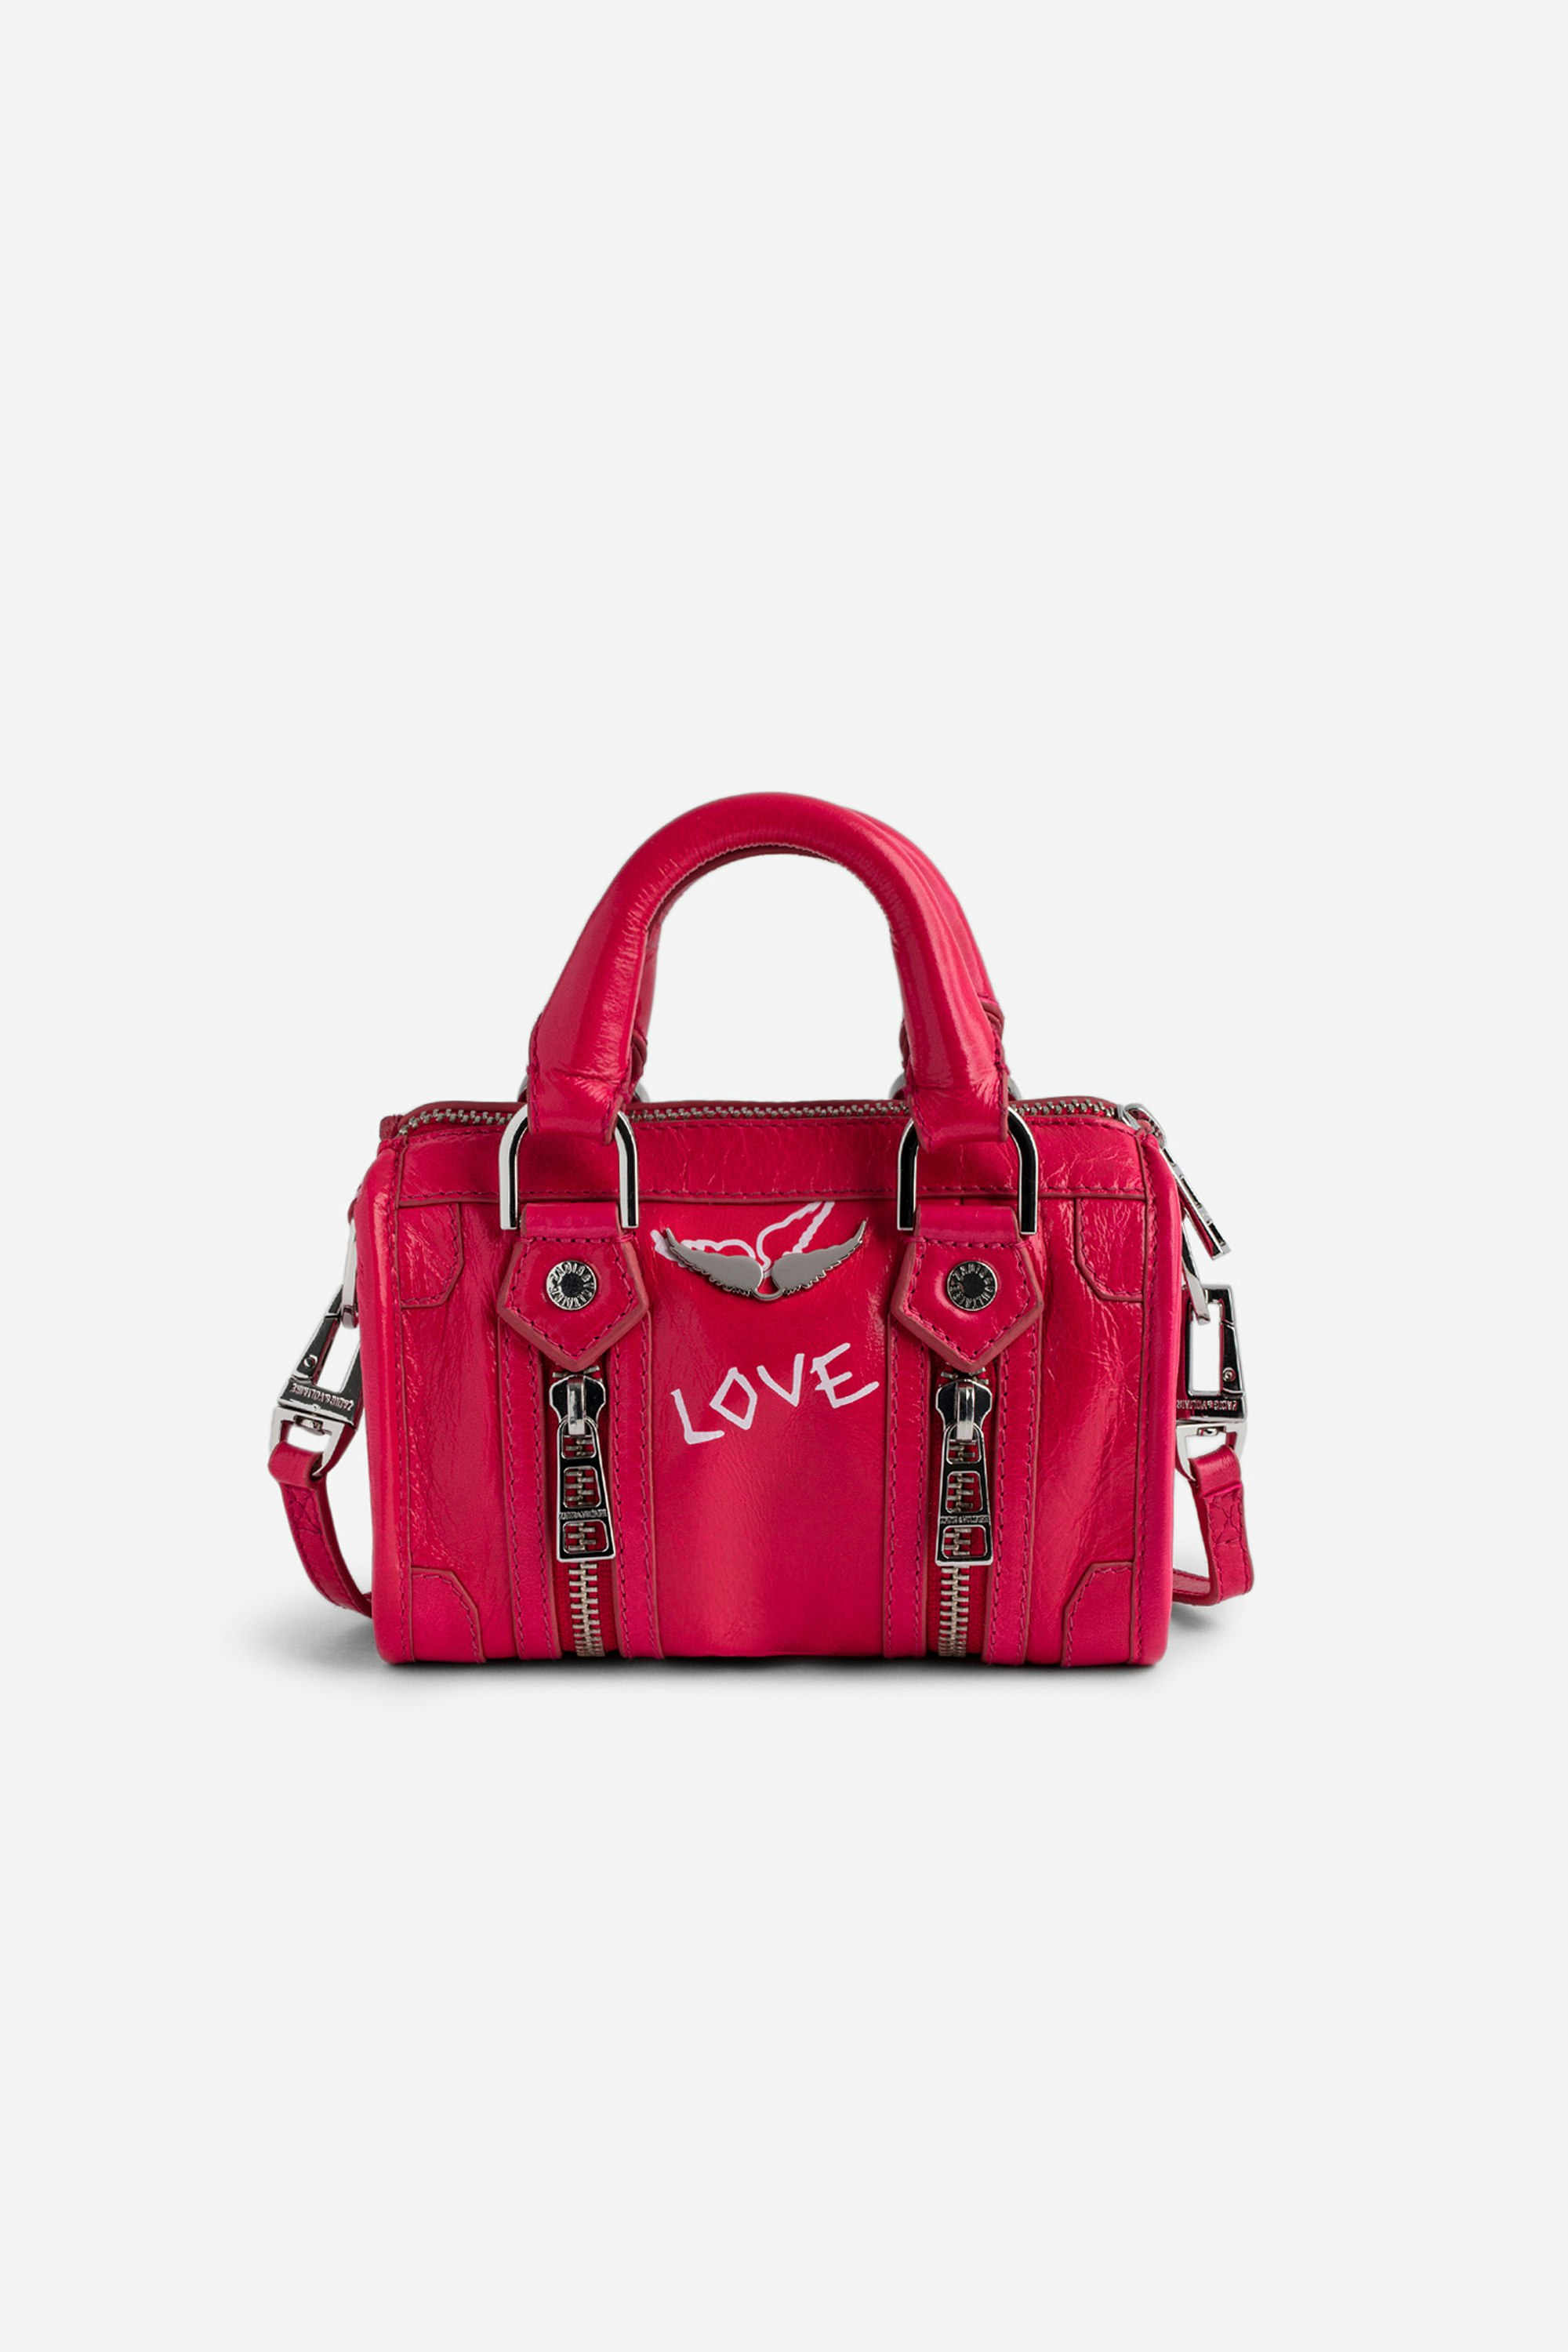 Tasche Sunny Nano #2 Tag Nano-Tasche aus rosafarbenem Lackleder mit Vintage-Optik mit Henkeln und Schulterriemen mit Flügel- und „Love“-Tags.